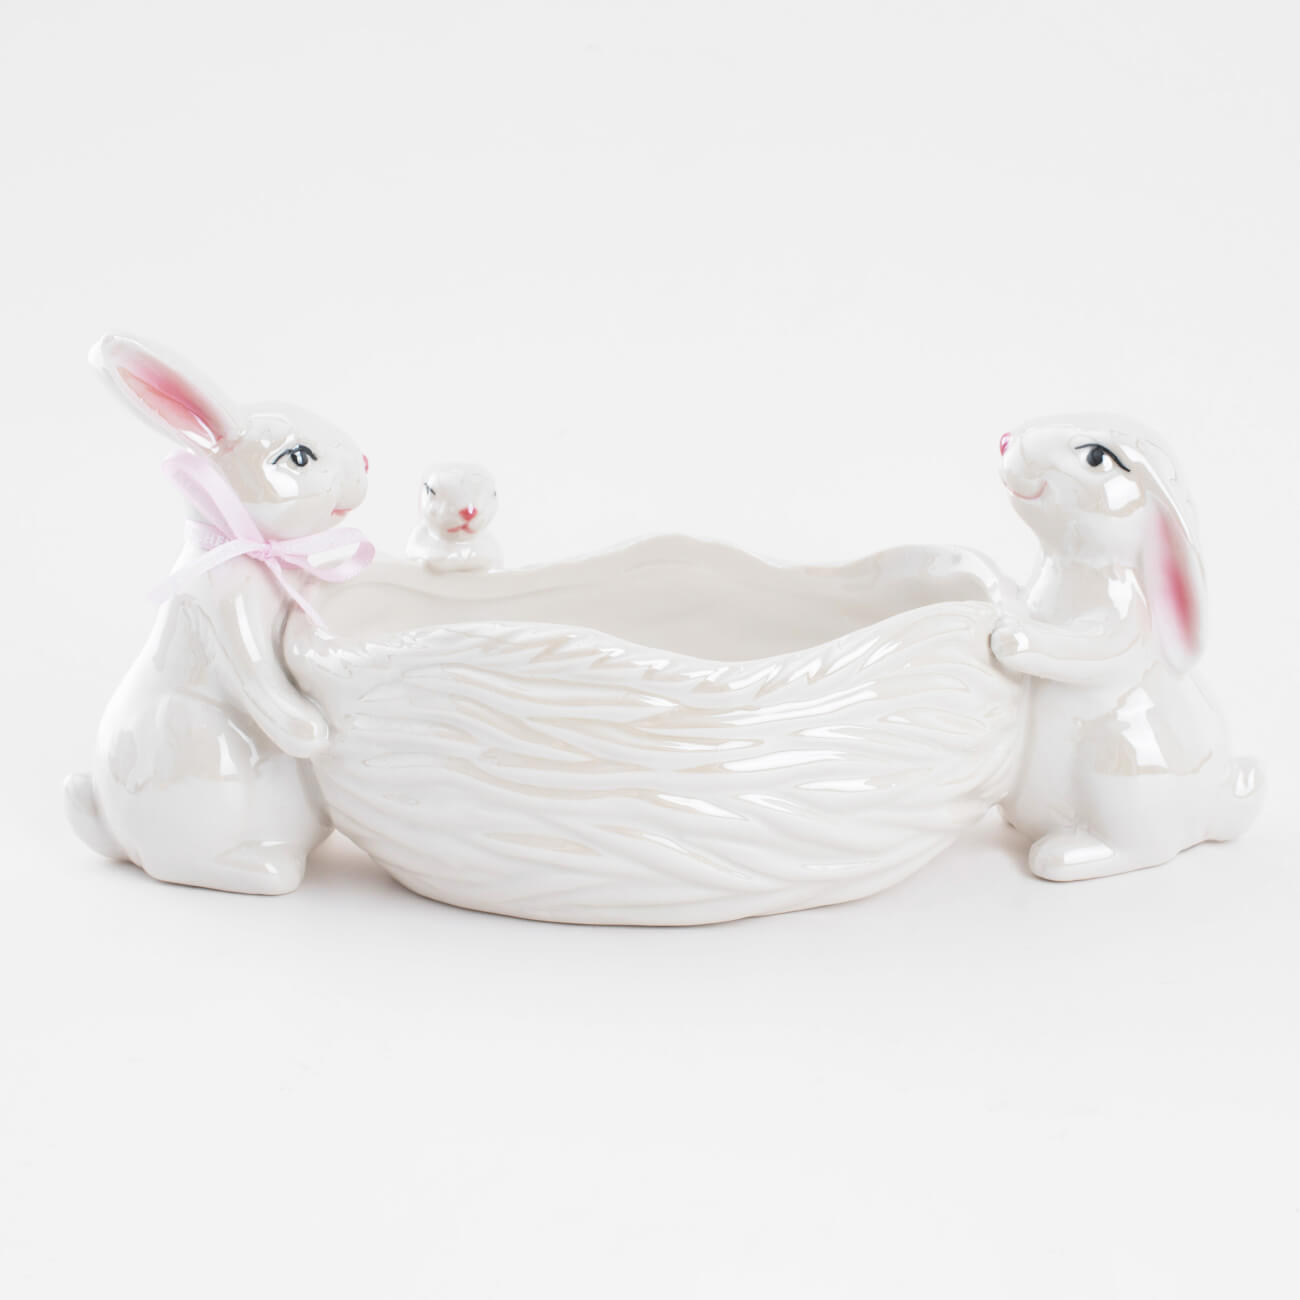 статуэтка 15 см фарфор porcelain белая кролик в ах pure easter Конфетница, 29х13 см, фарфор P, белая, перламутр, Три кролика у корзины, Easter